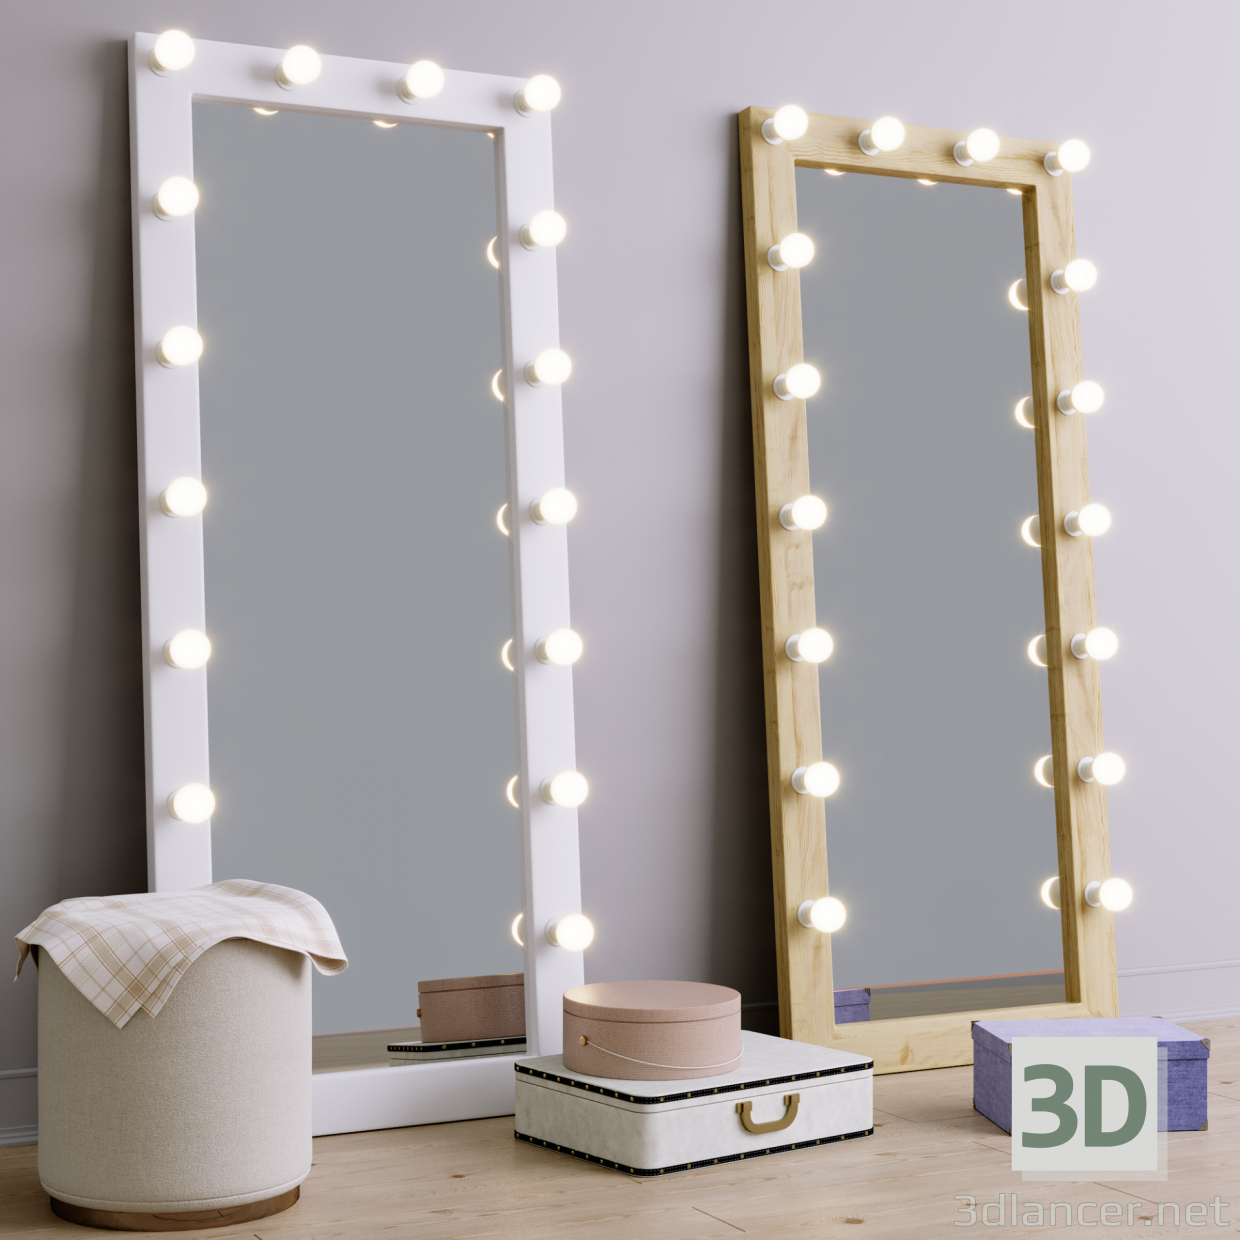 3d Floor make-up mirror model buy - render